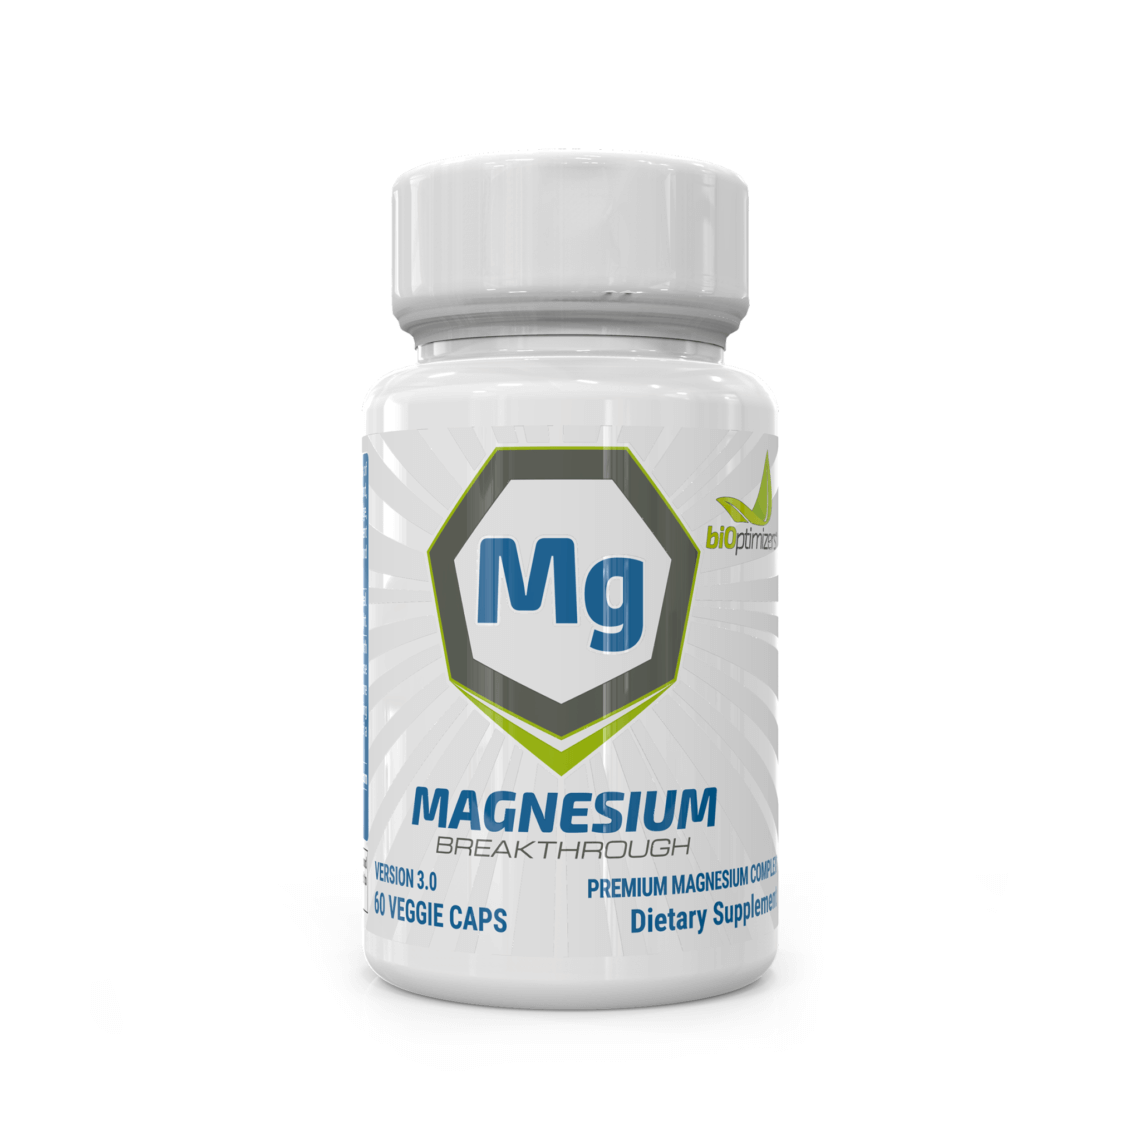 Magnesium Breakthrough Coupon - The Best Magnesium Supplement